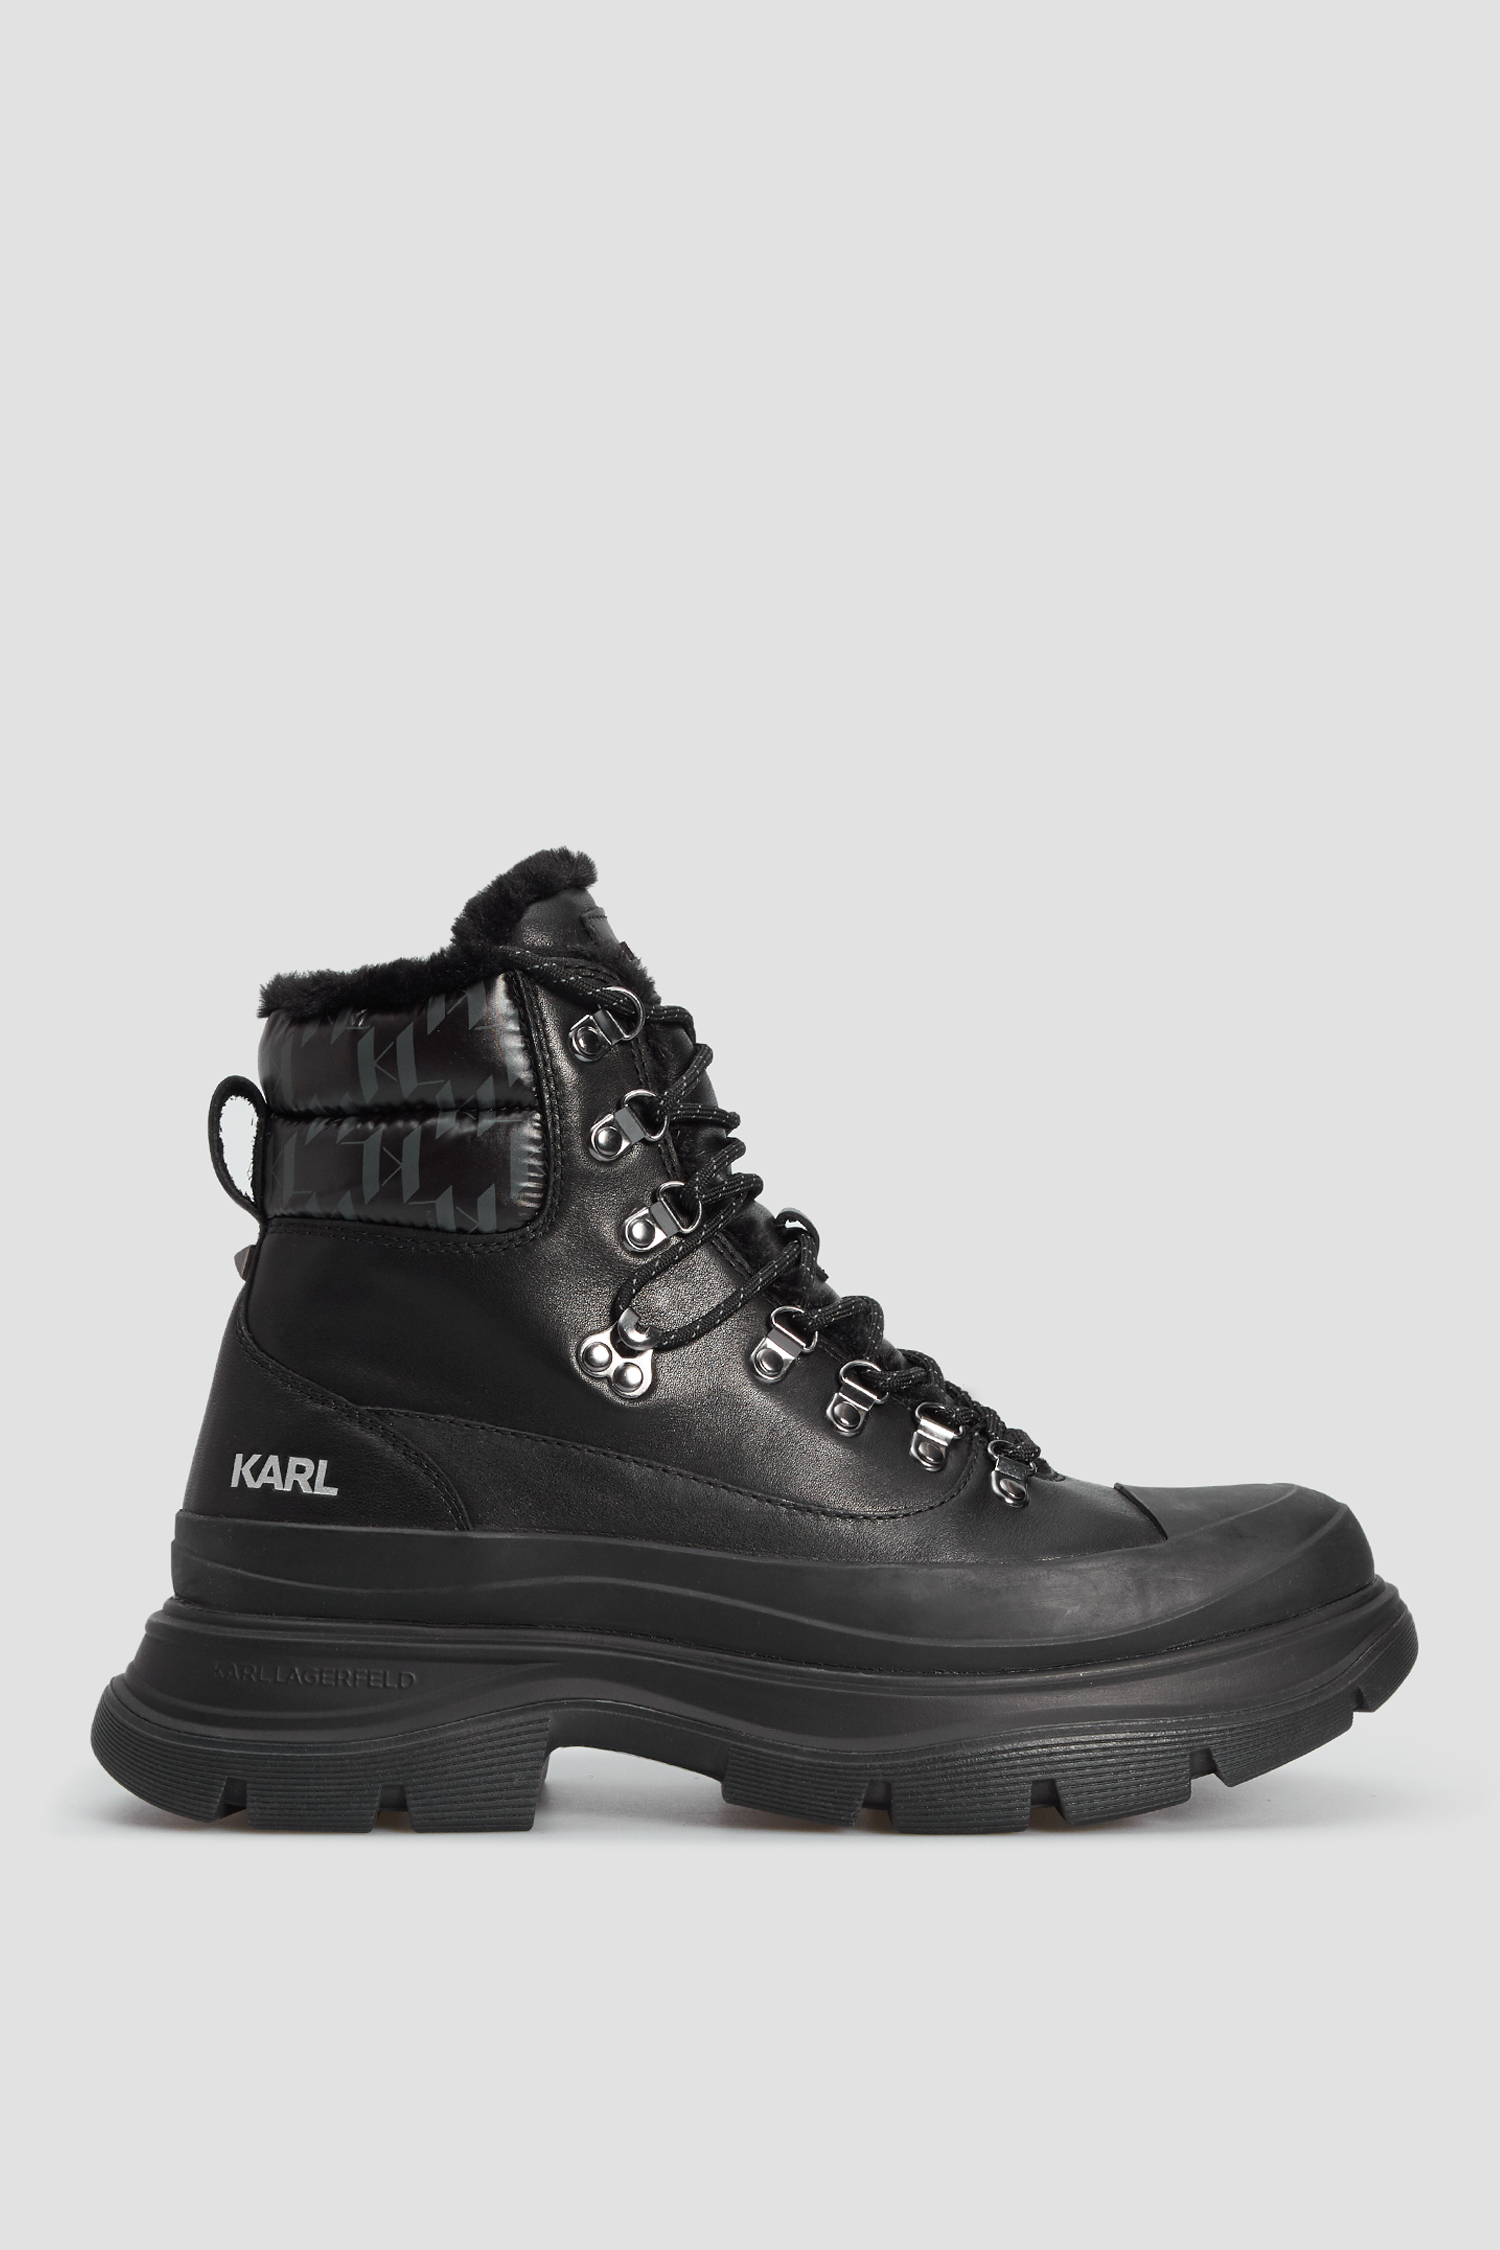 Мужские черные кожаные ботинки Karl Lagerfeld 524470.855010;990